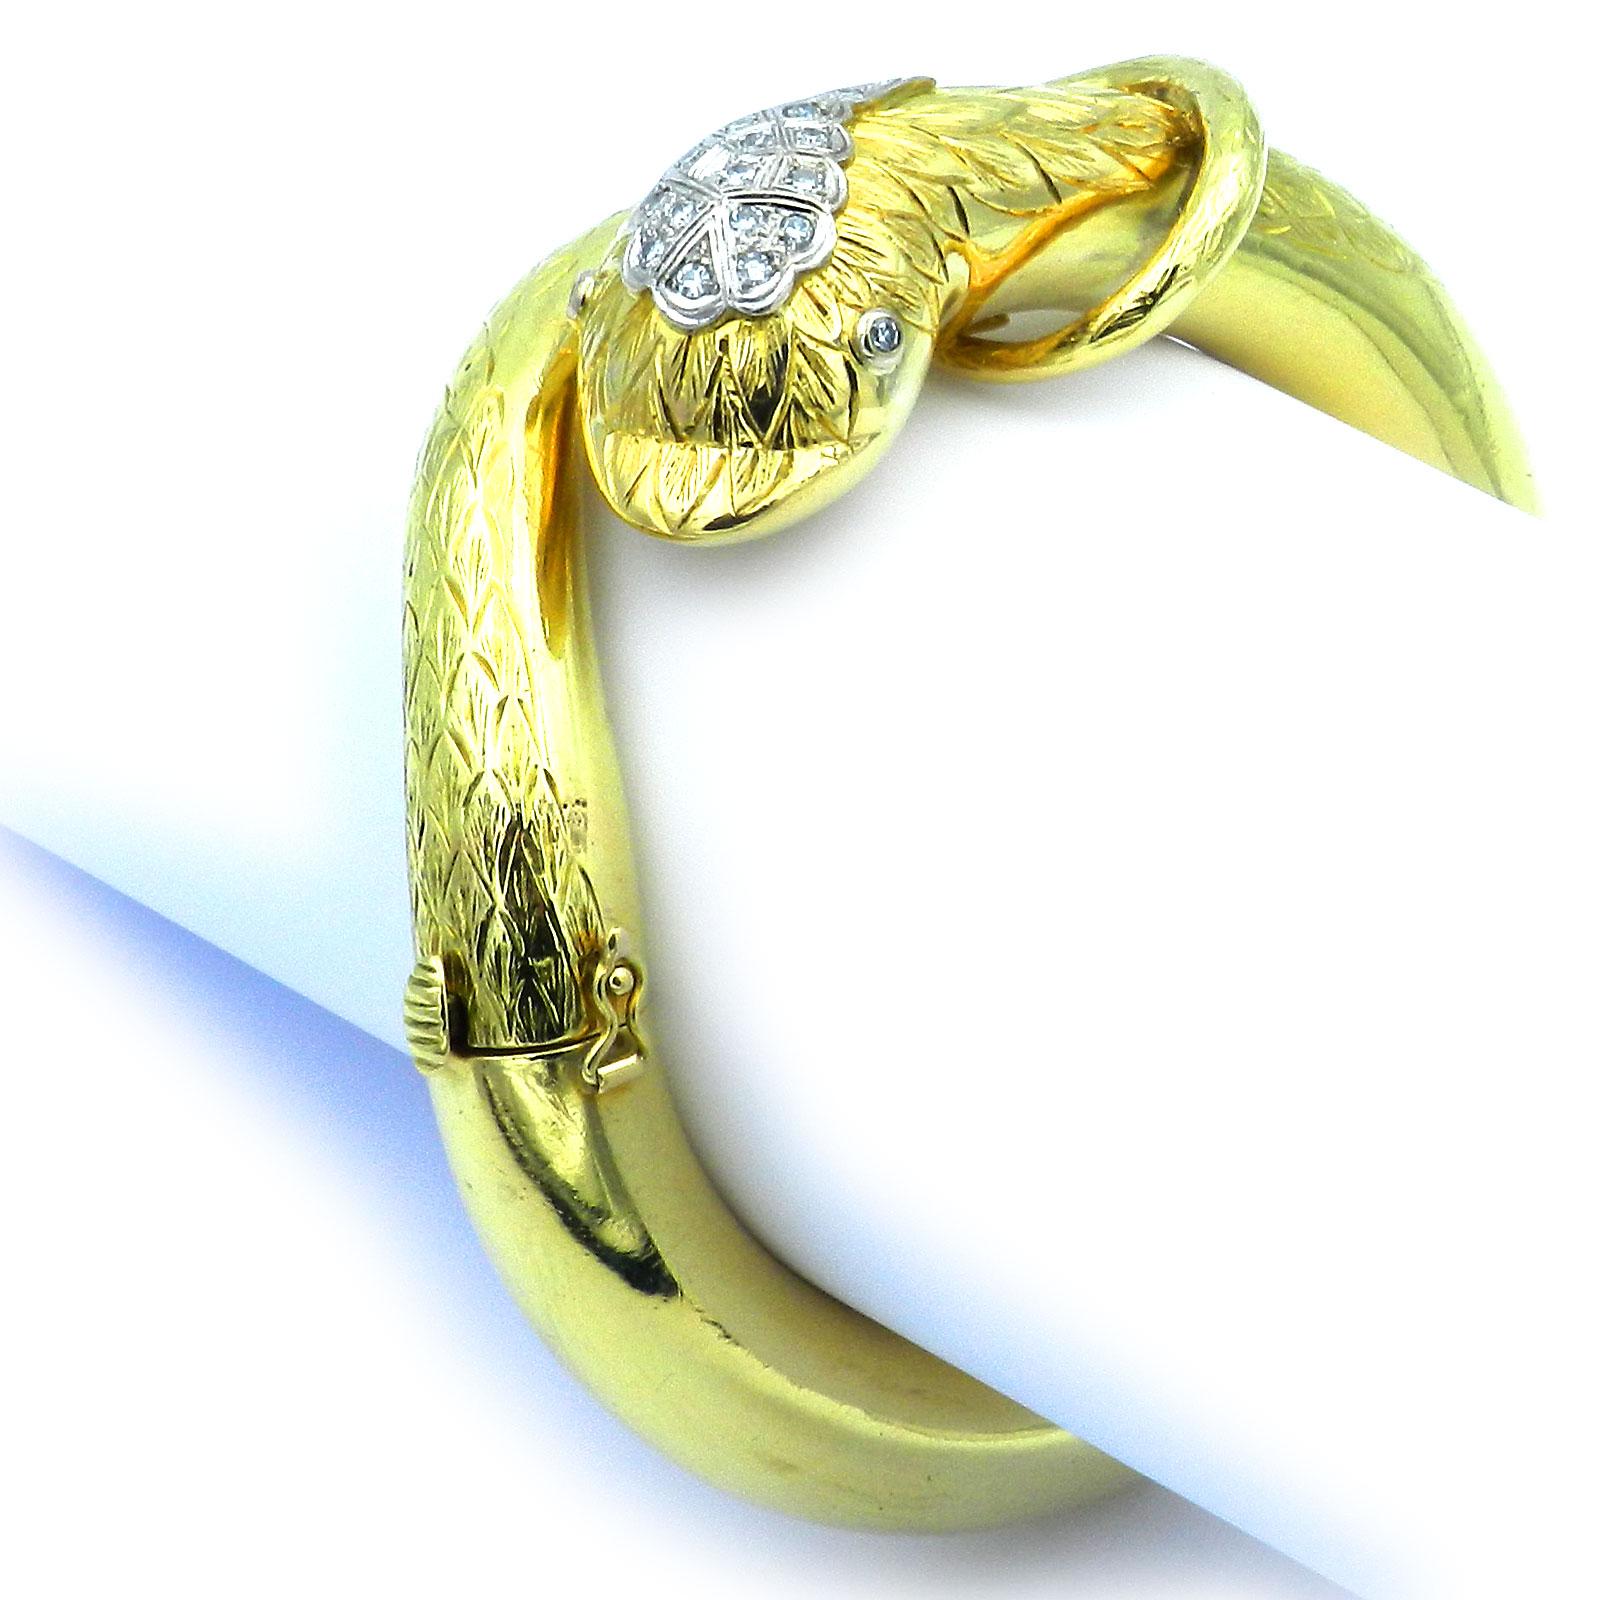 Bracelet serpent vintage en or 18K et 0.29 ct de diamant

Bracelet serpent très décoratif et inhabituel avec charnière en travail lourd, le dessus finement ciselé, la tête et les yeux sertis d'un total de 16 diamants totalisant 0,29 ct H/si, sertis